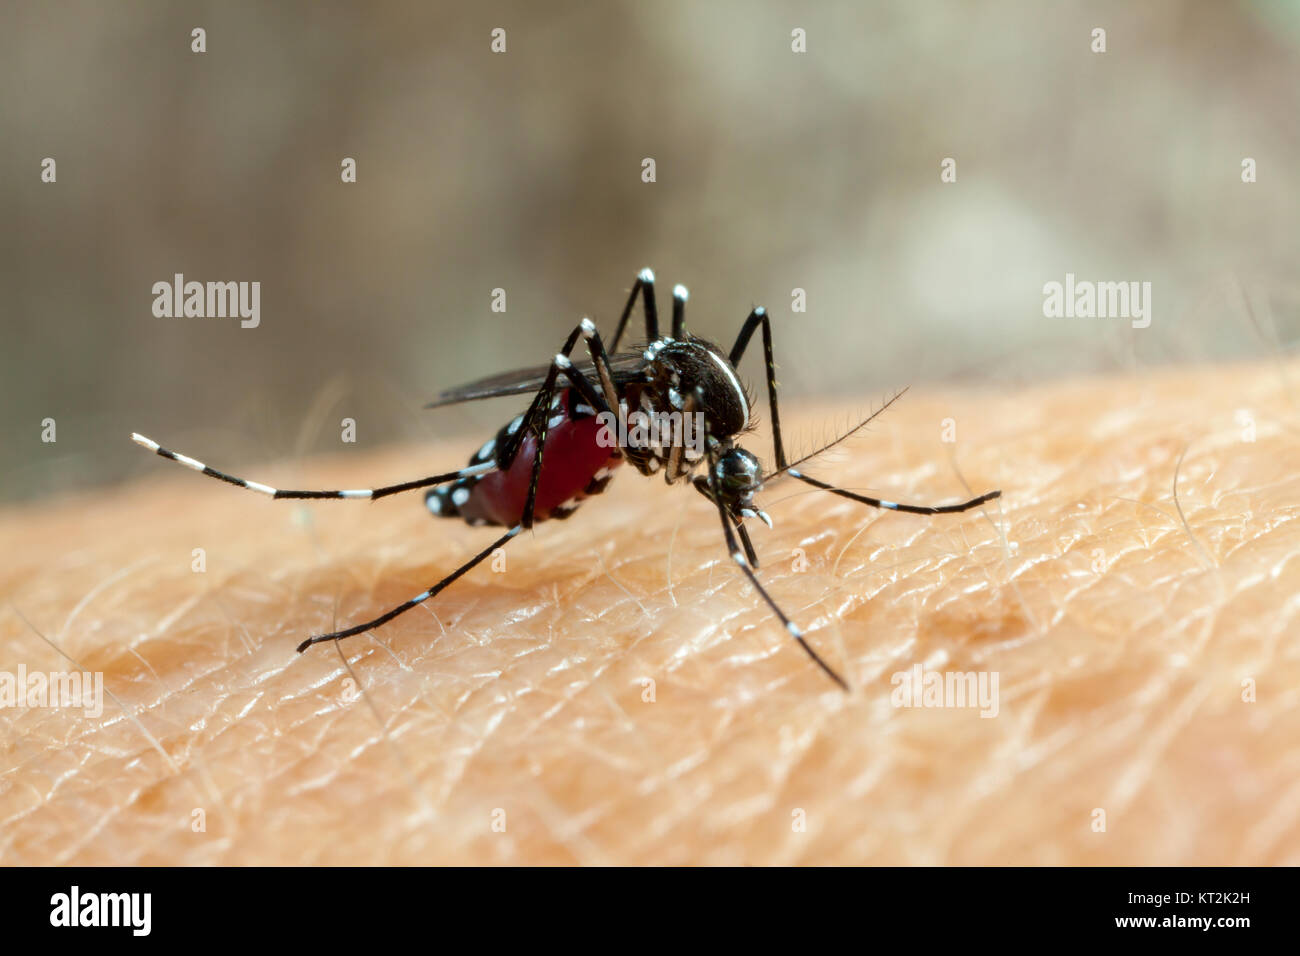 Dengue, zika and chikungunya fever mosquito (aedes aegypti) bitting human skin - drinking blood Stock Photo